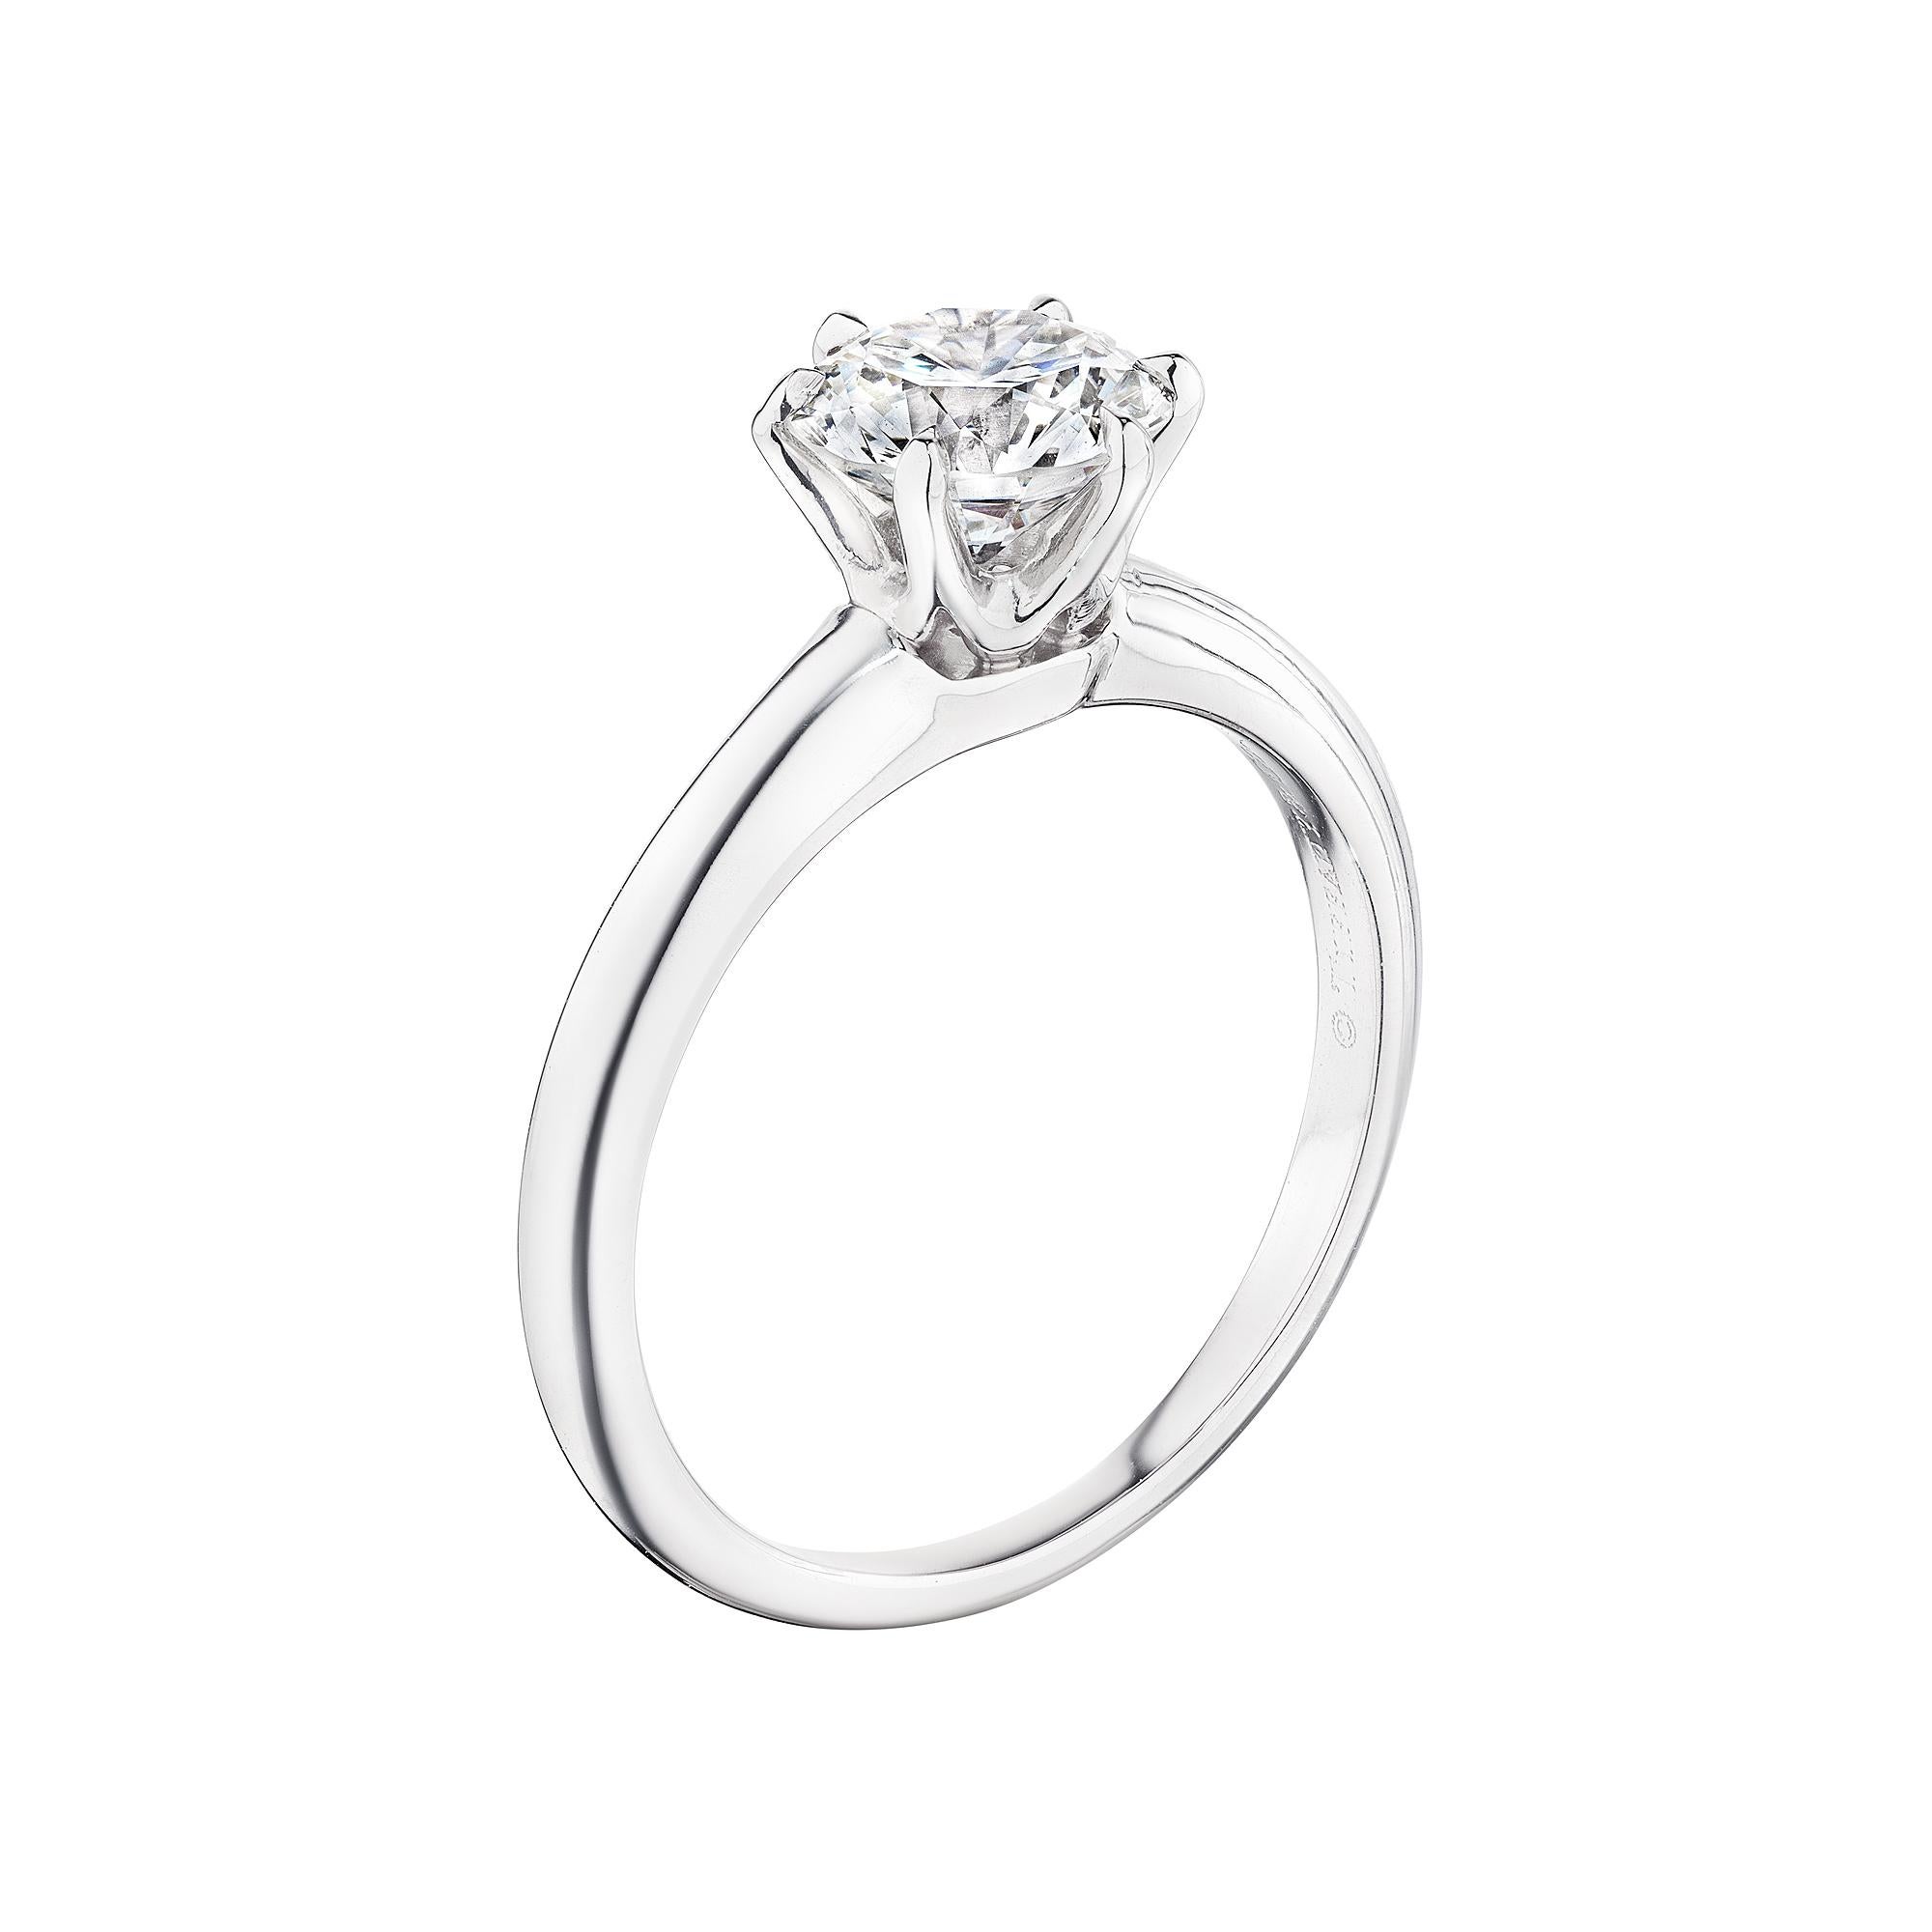 Einfach leuchtend.  Dieser Verlobungsring von Tiffany & Co. mit 1,12 runden Diamanten im Brillantschliff aus Platin mit GIA-Zertifikat hebt sich von allen anderen ab.  Signiert Tiffany & Co.  Ca. 2003.  Diamant Farbe H.  Klarheit VS2. 